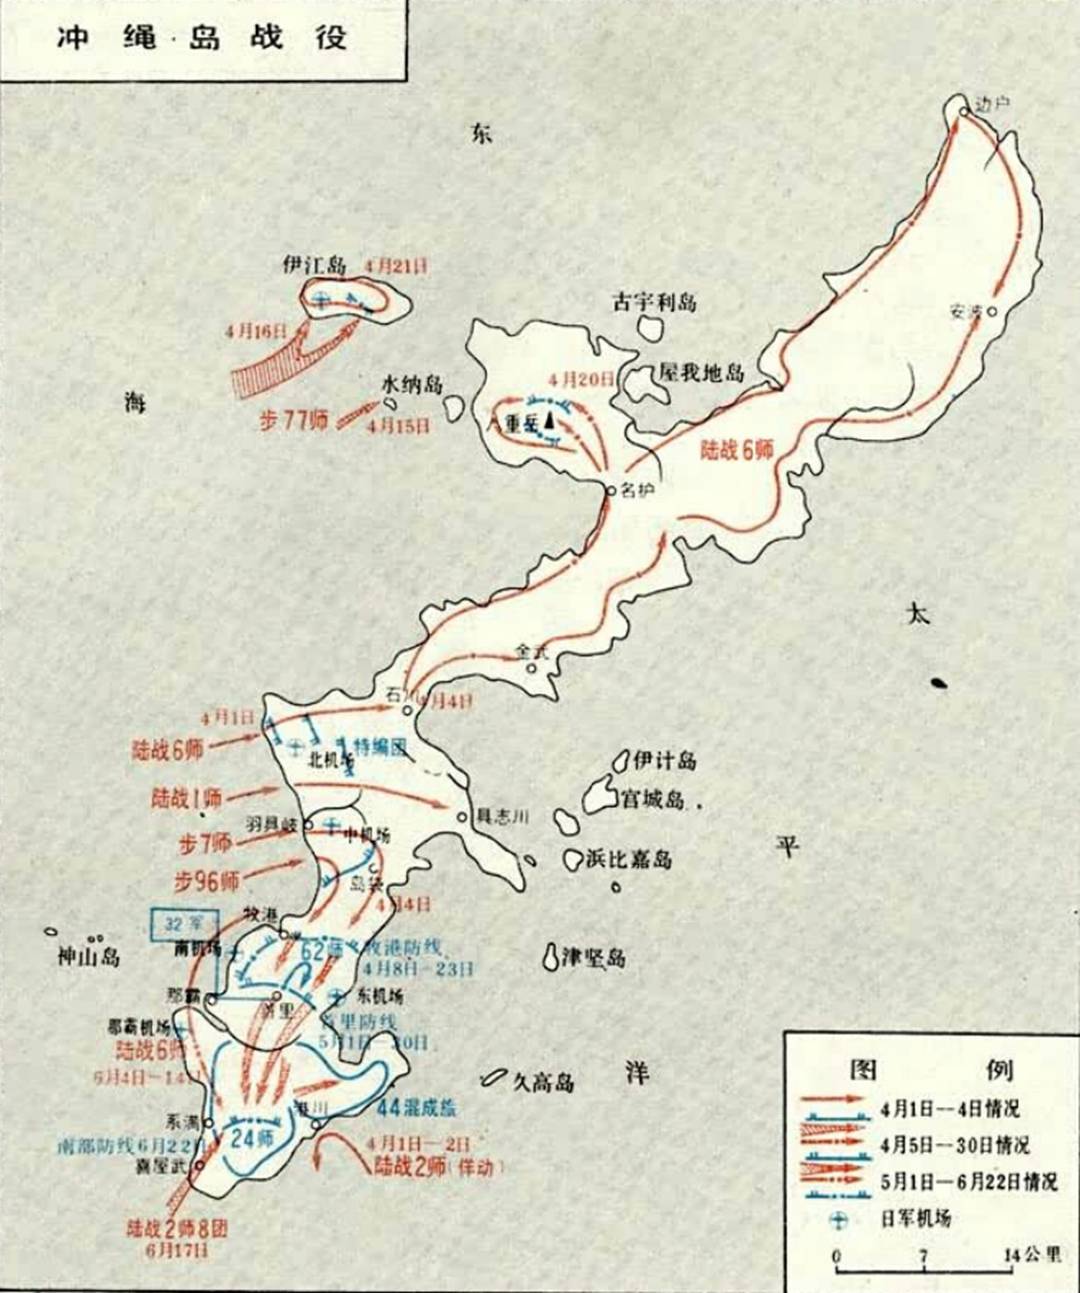 原创冲绳岛战役:二战史上最残酷的战役之一,美军士兵称这是一场噩梦